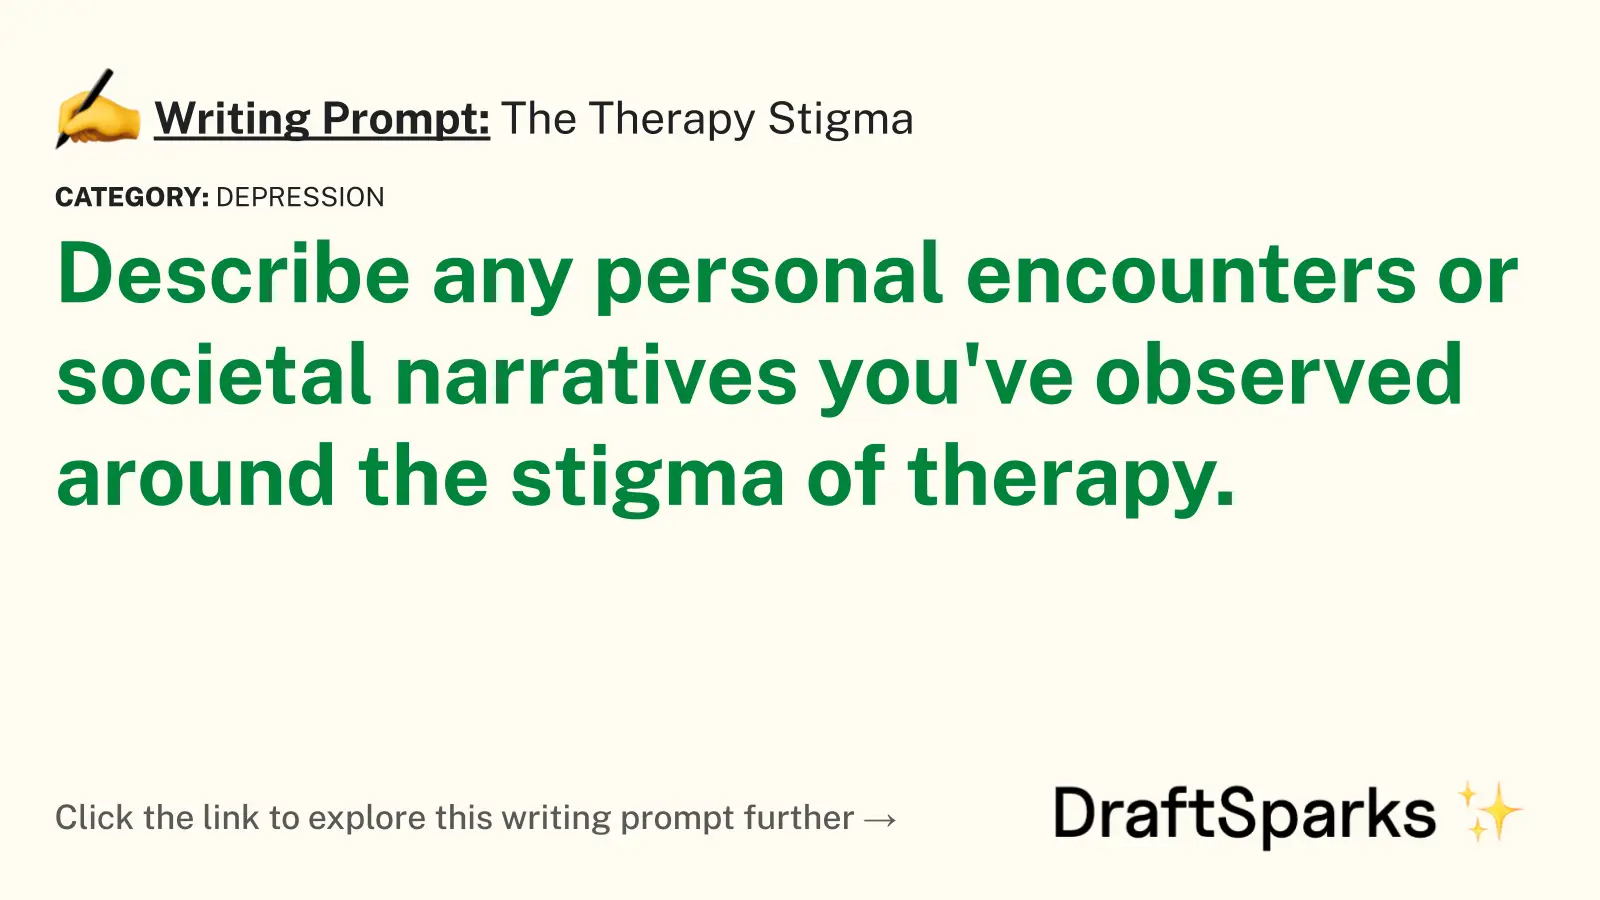 The Therapy Stigma